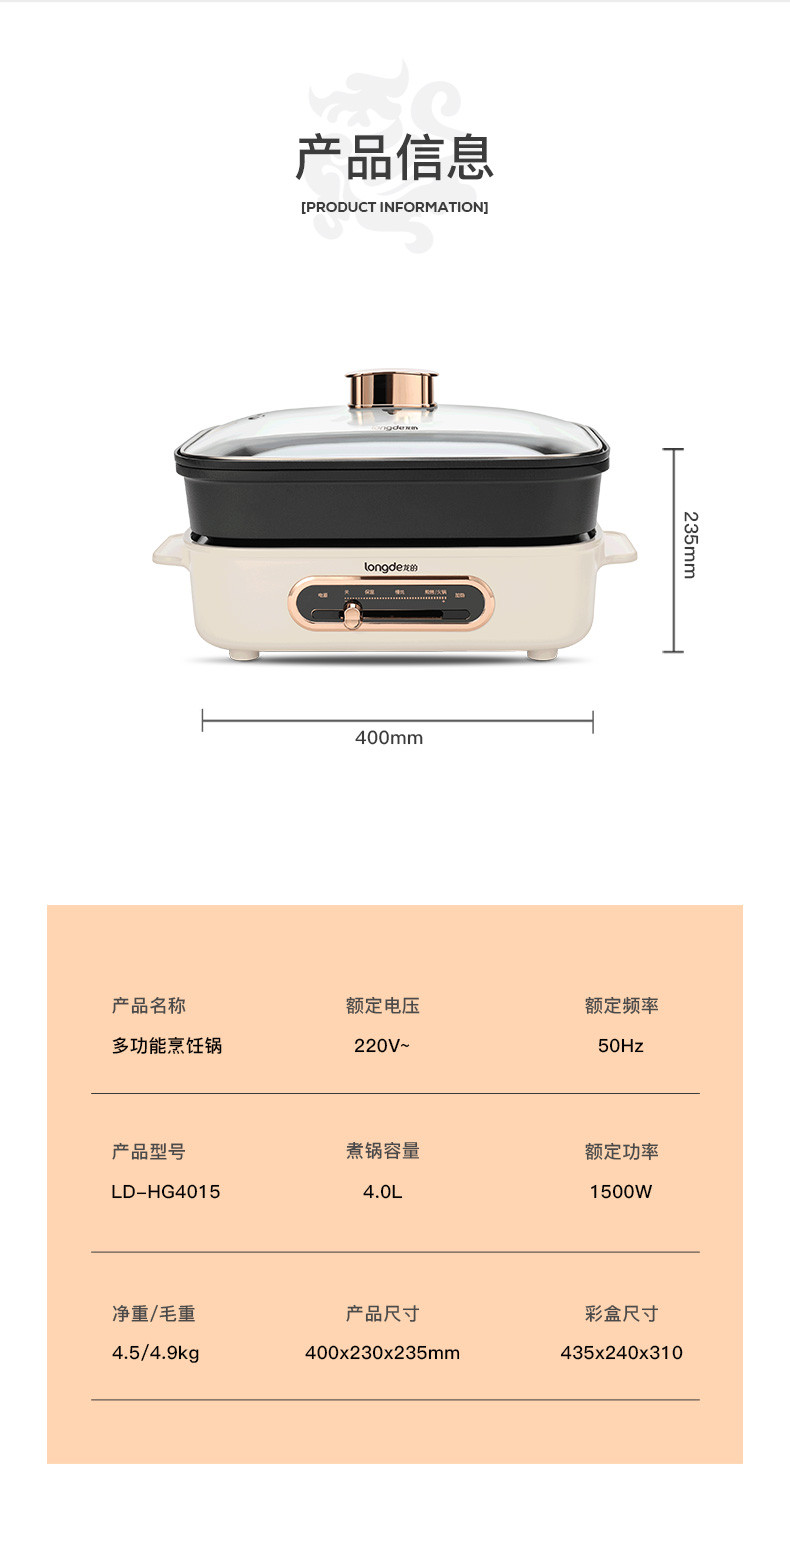 龙的/Longde 新品多功能锅电烧烤锅煎锅多用途料理锅电火锅家用4.0L  LD-HG4015